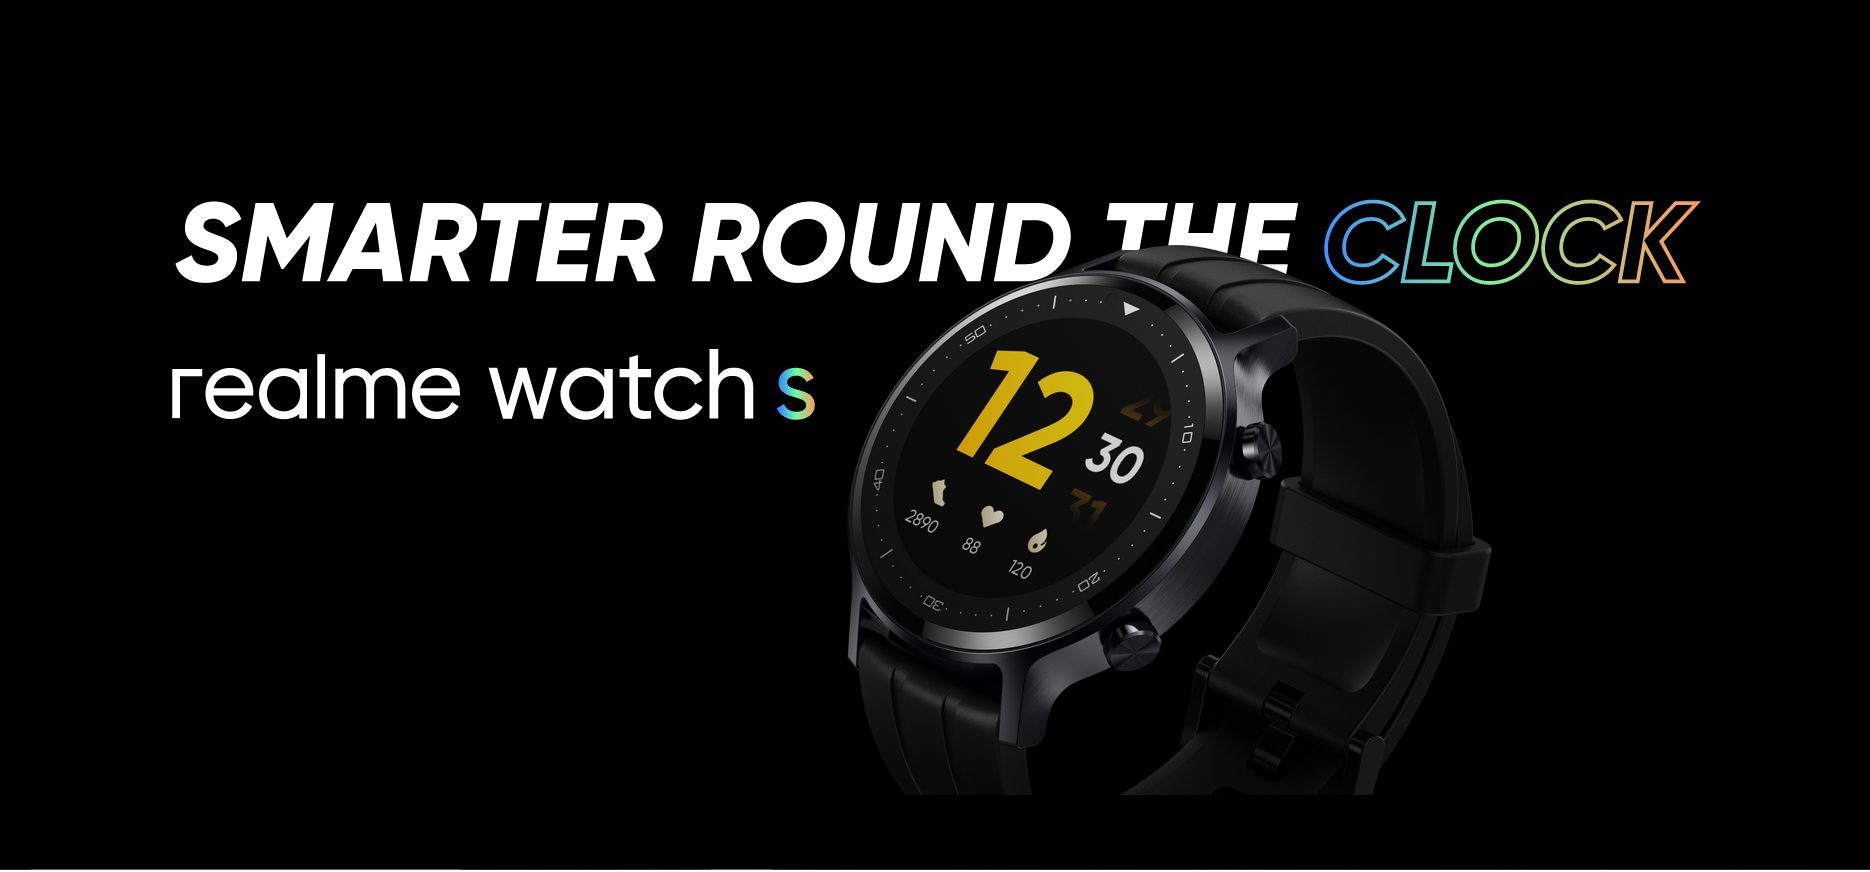 Realme Watch S: новые "умные" часы с круглым циферблатом по доступной цене